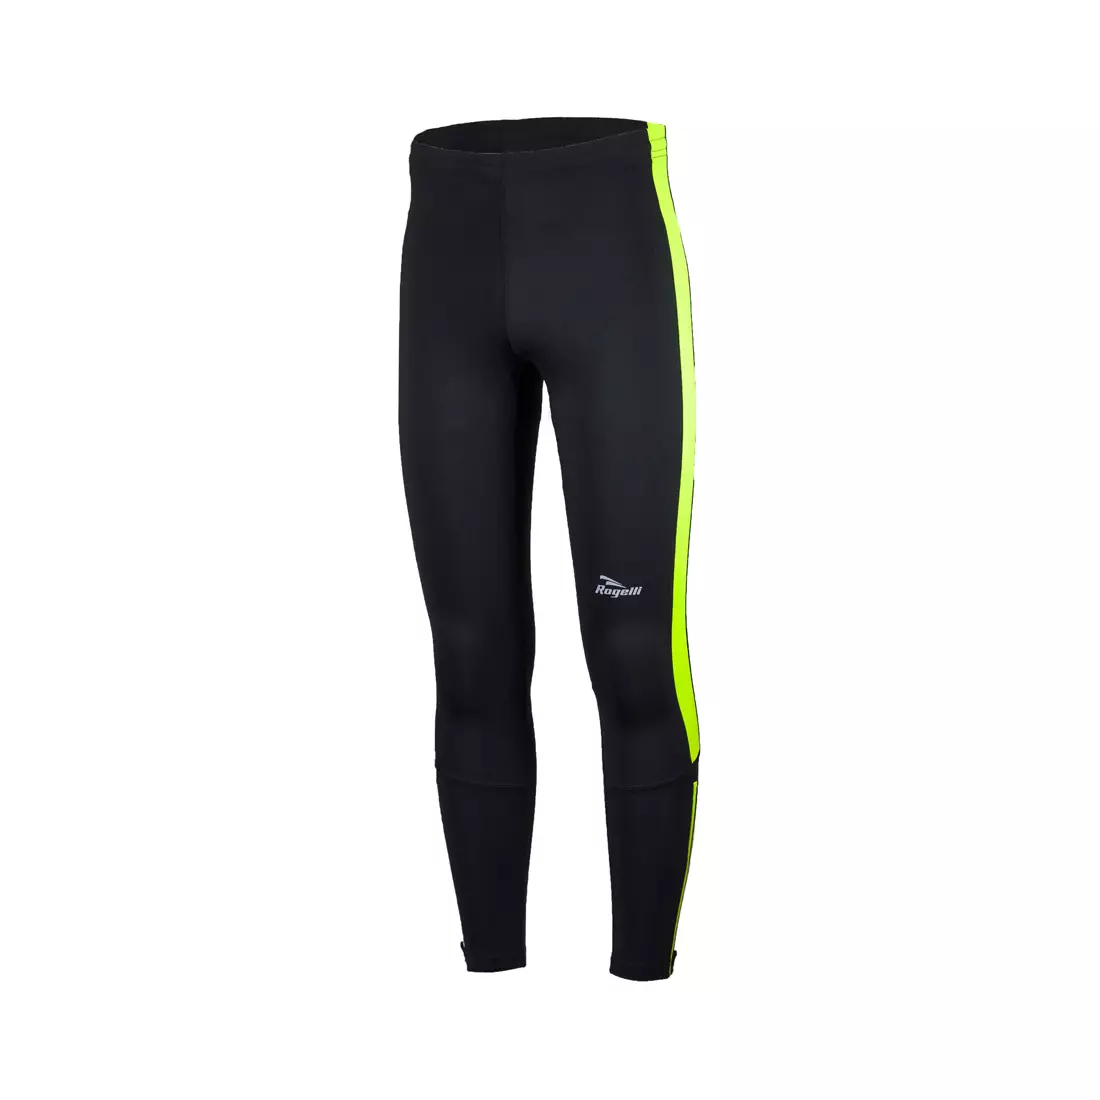 Pantaloni de alergare pentru bărbați ROGELLI RUN 830.737 VISION 2.0, negri și fluor